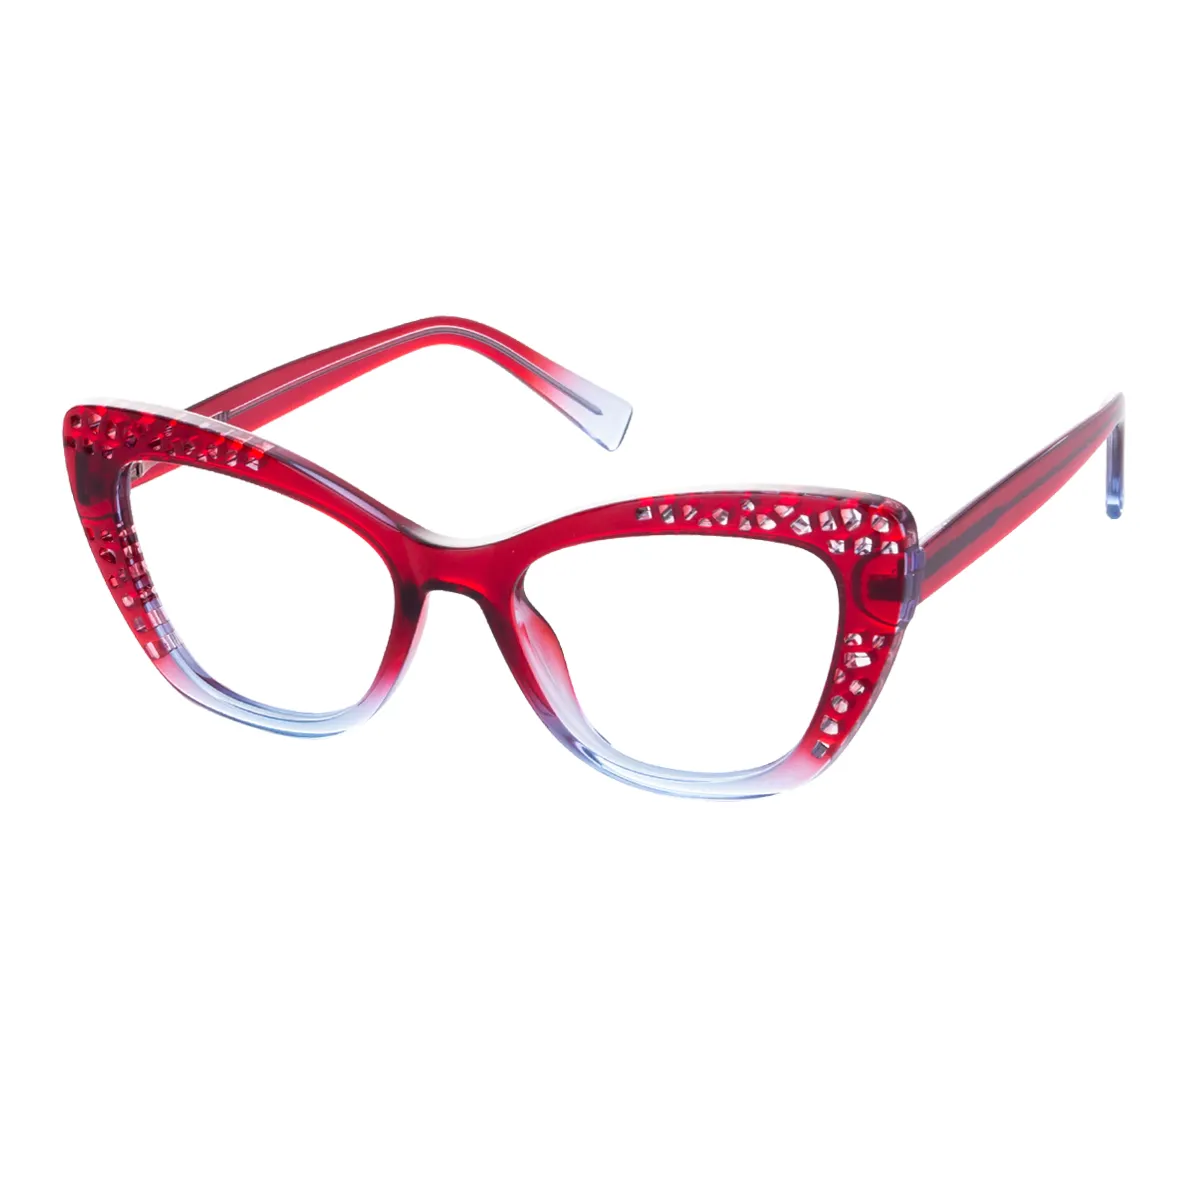 Sum - Cat-eye Red Glasses for Women